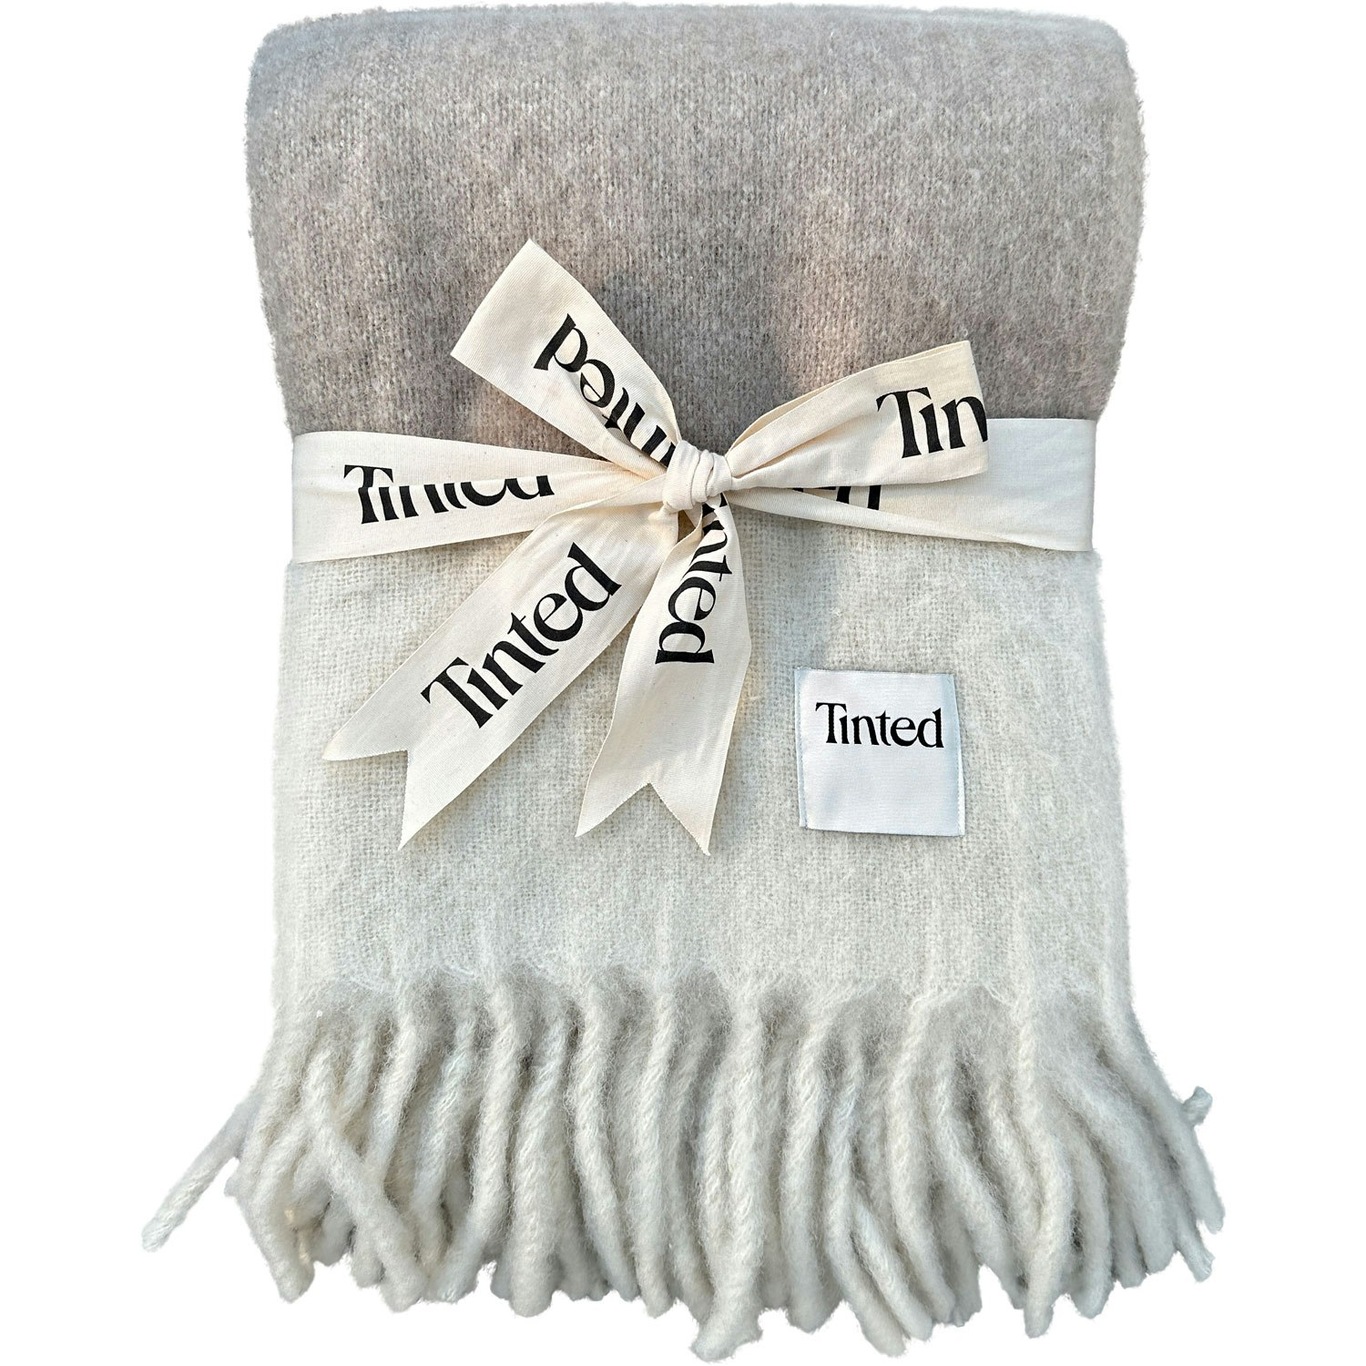 Hemple Wool Blanket, 130x170 cm Beige/Off-white